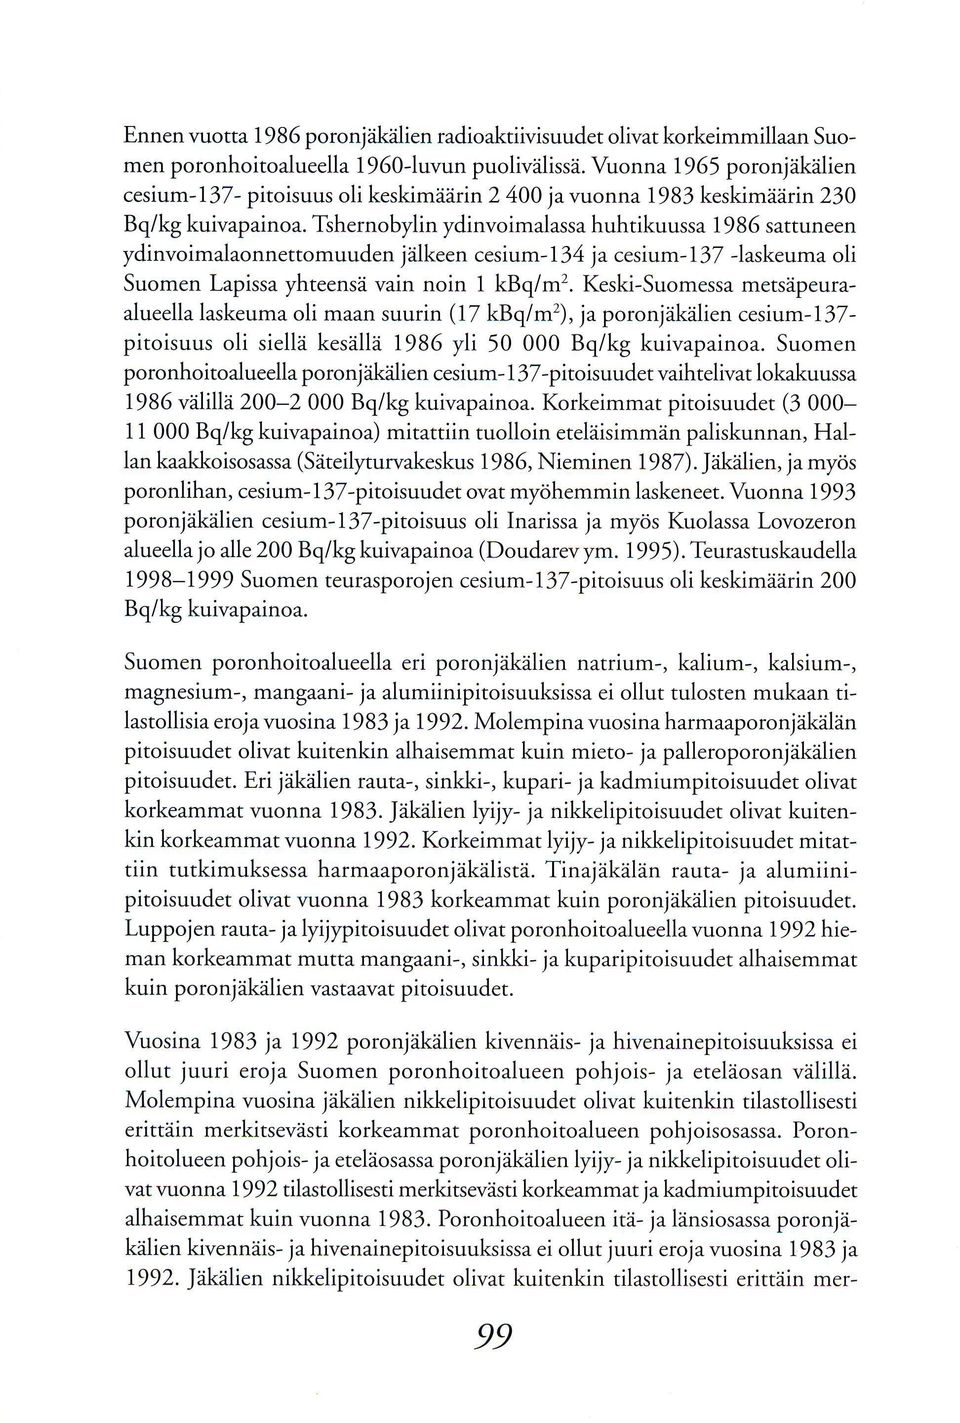 Tshernobylin ydinvoimalassa huhtikuussa 1986 sattuneen ydinvoimalaonnettomuuden jdlkeen cesium-1 34 ja cesium- I 37 laskeuma oli Suomen Lapissa yhteensd vain noin 1 kbq/m2. Keski-Suomessa mersd.